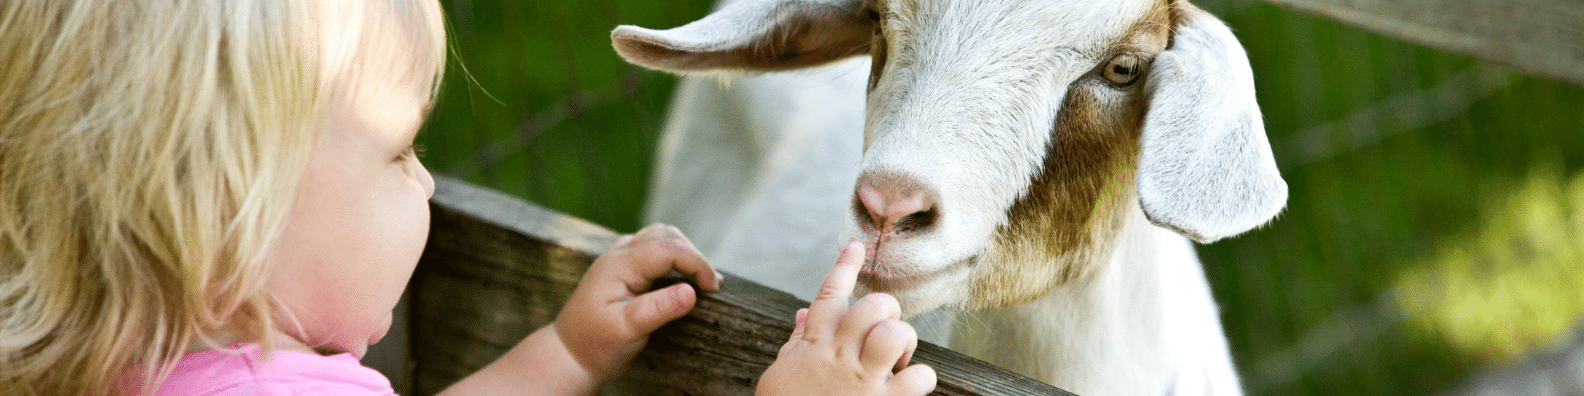 возраст козы или козла по человеческим меркам